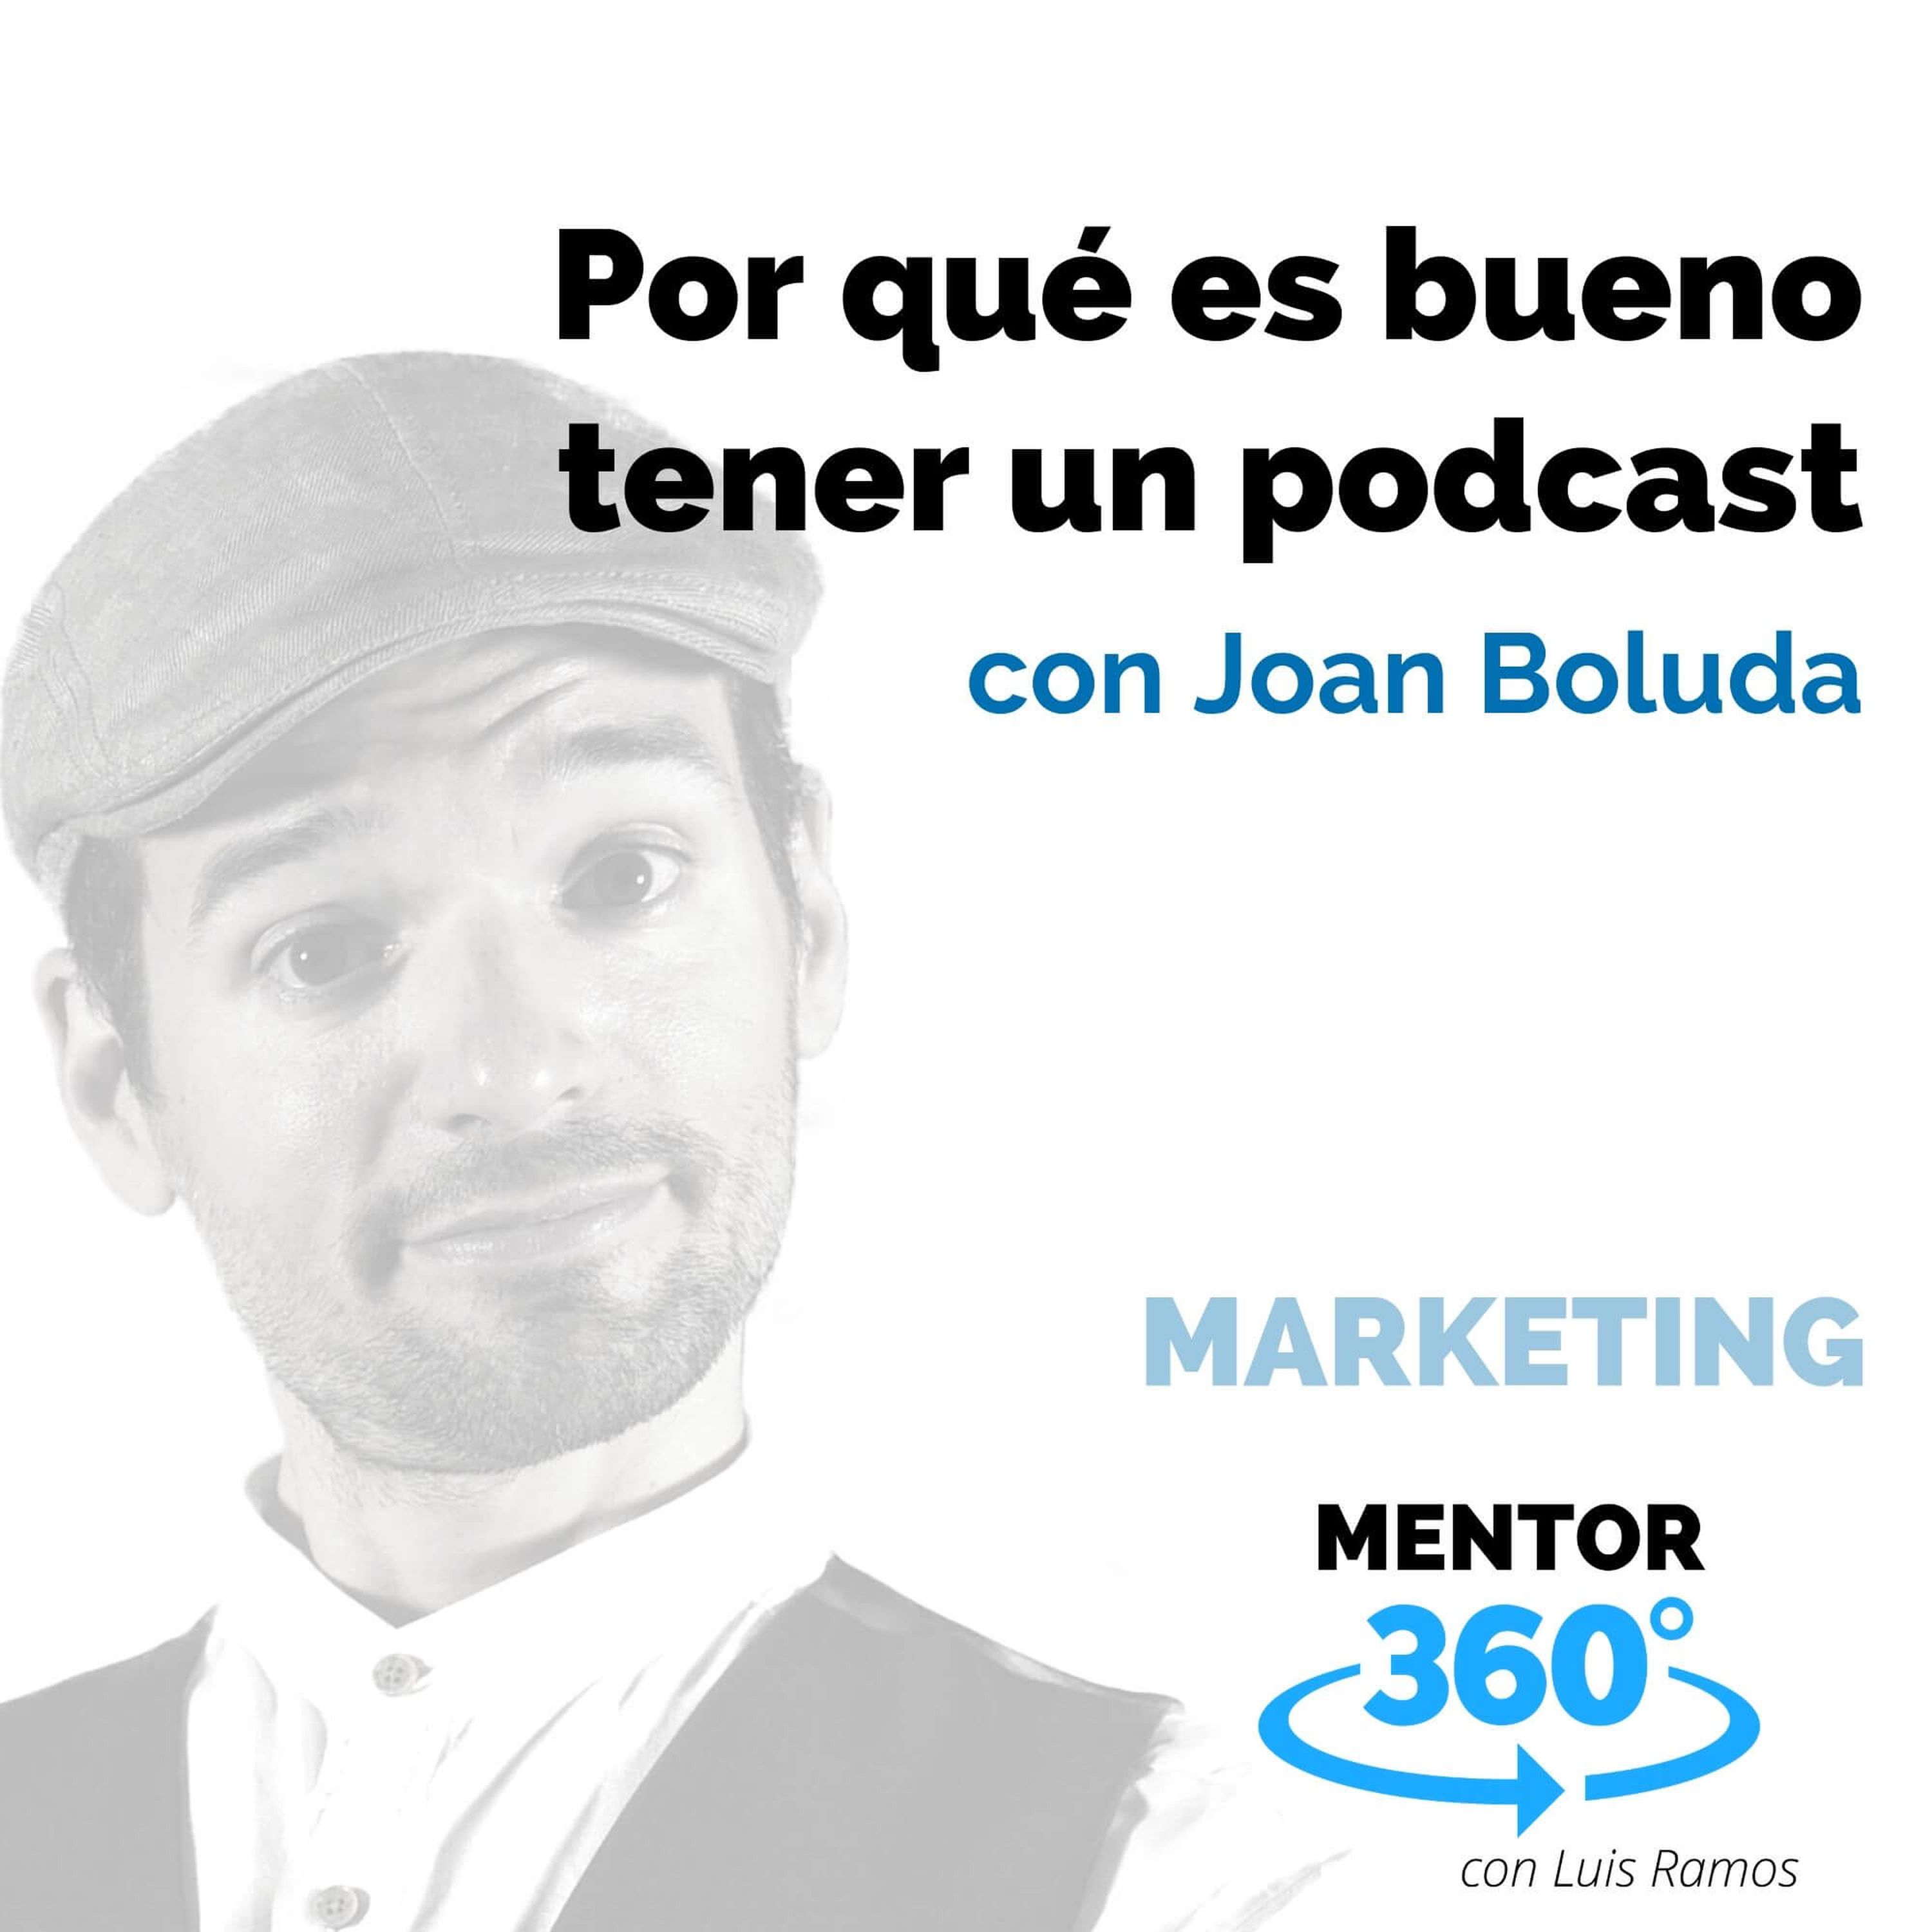 Por qué es bueno tener un podcast, con Joan Boluda - MARKETING - MENTOR360